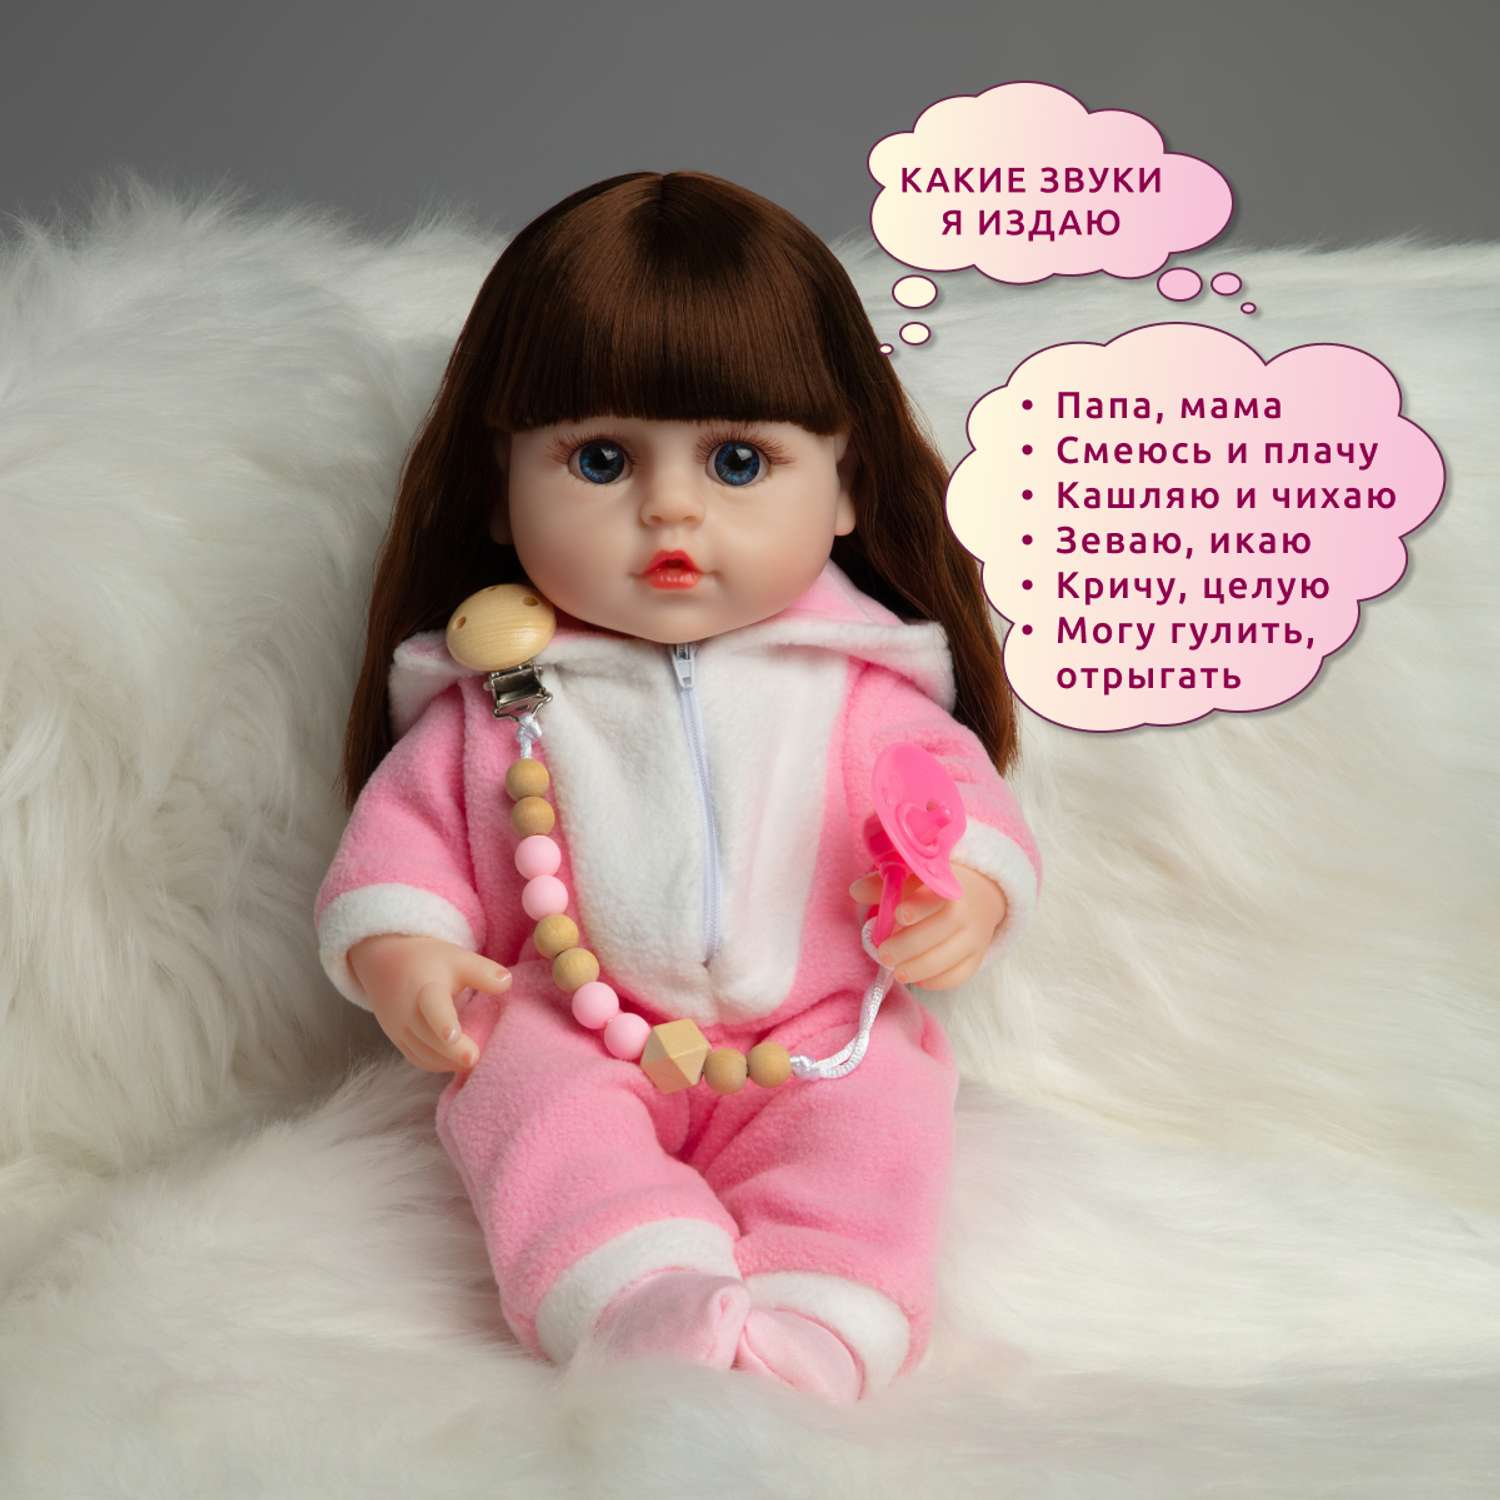 Кукла Реборн QA BABY Яна девочка интерактивная Пупс набор игрушки для ванной для девочки 38 см 3812 - фото 3